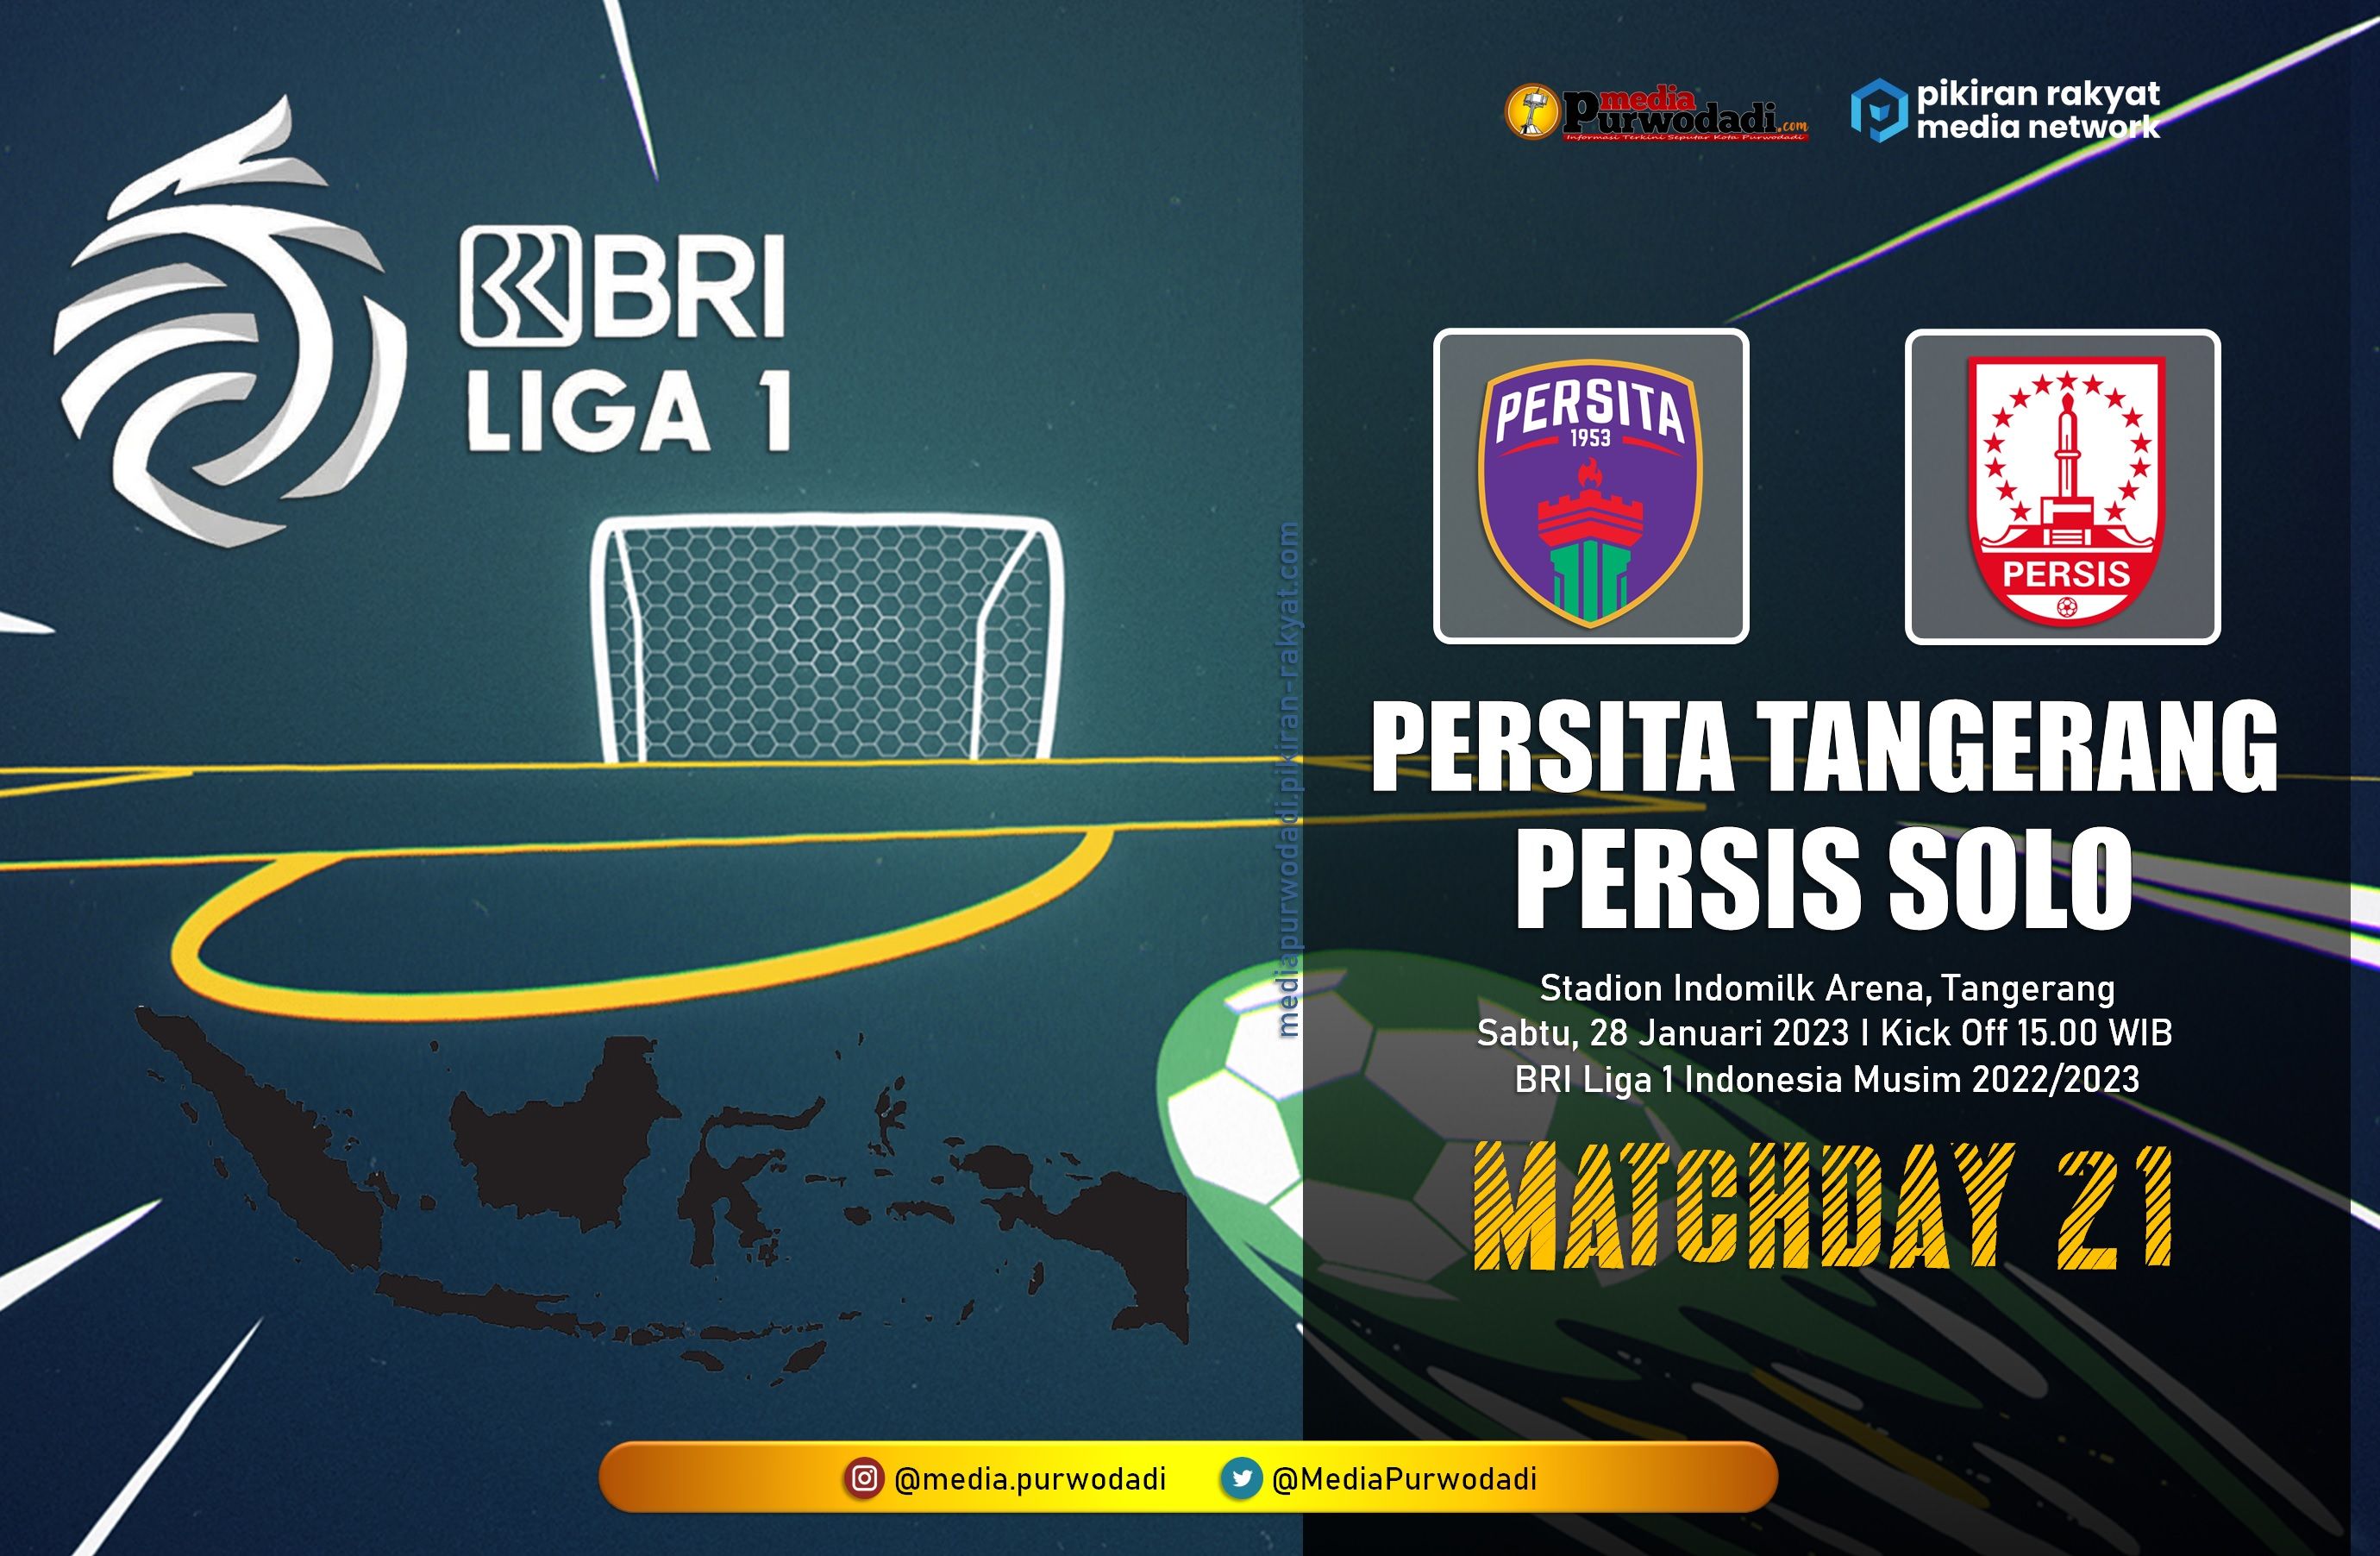 Persita Tangerang menjamu Persis Solo pada pekan 21 BRI Liga 1 Indonesia musim 2022/2023 di Stadion Indomilk Arena pada Sabtu, 28 Januari 2023 puul 15.00 WIB.